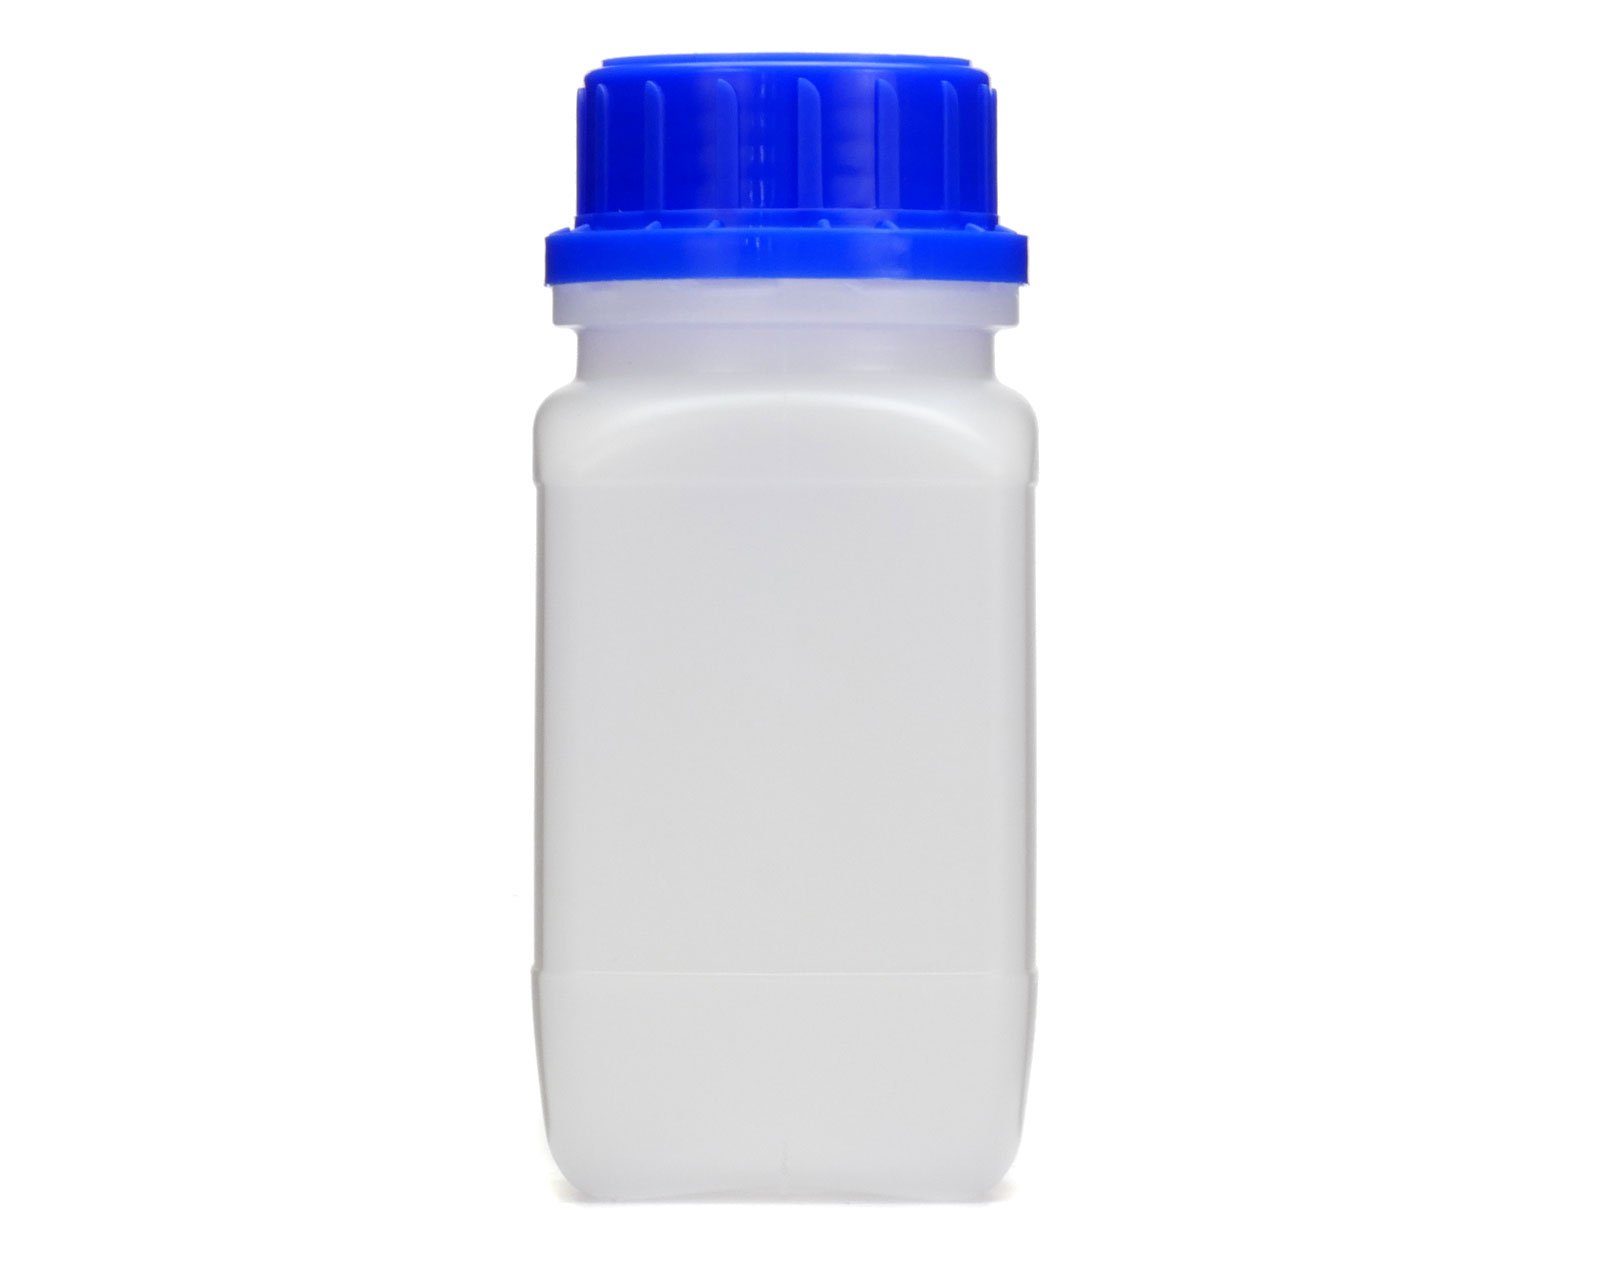 G Weithals-Flasche 250 St) Kanister 45 Deckel, naturfarben, OCTOPUS ml (250 vierkant, blauem mit